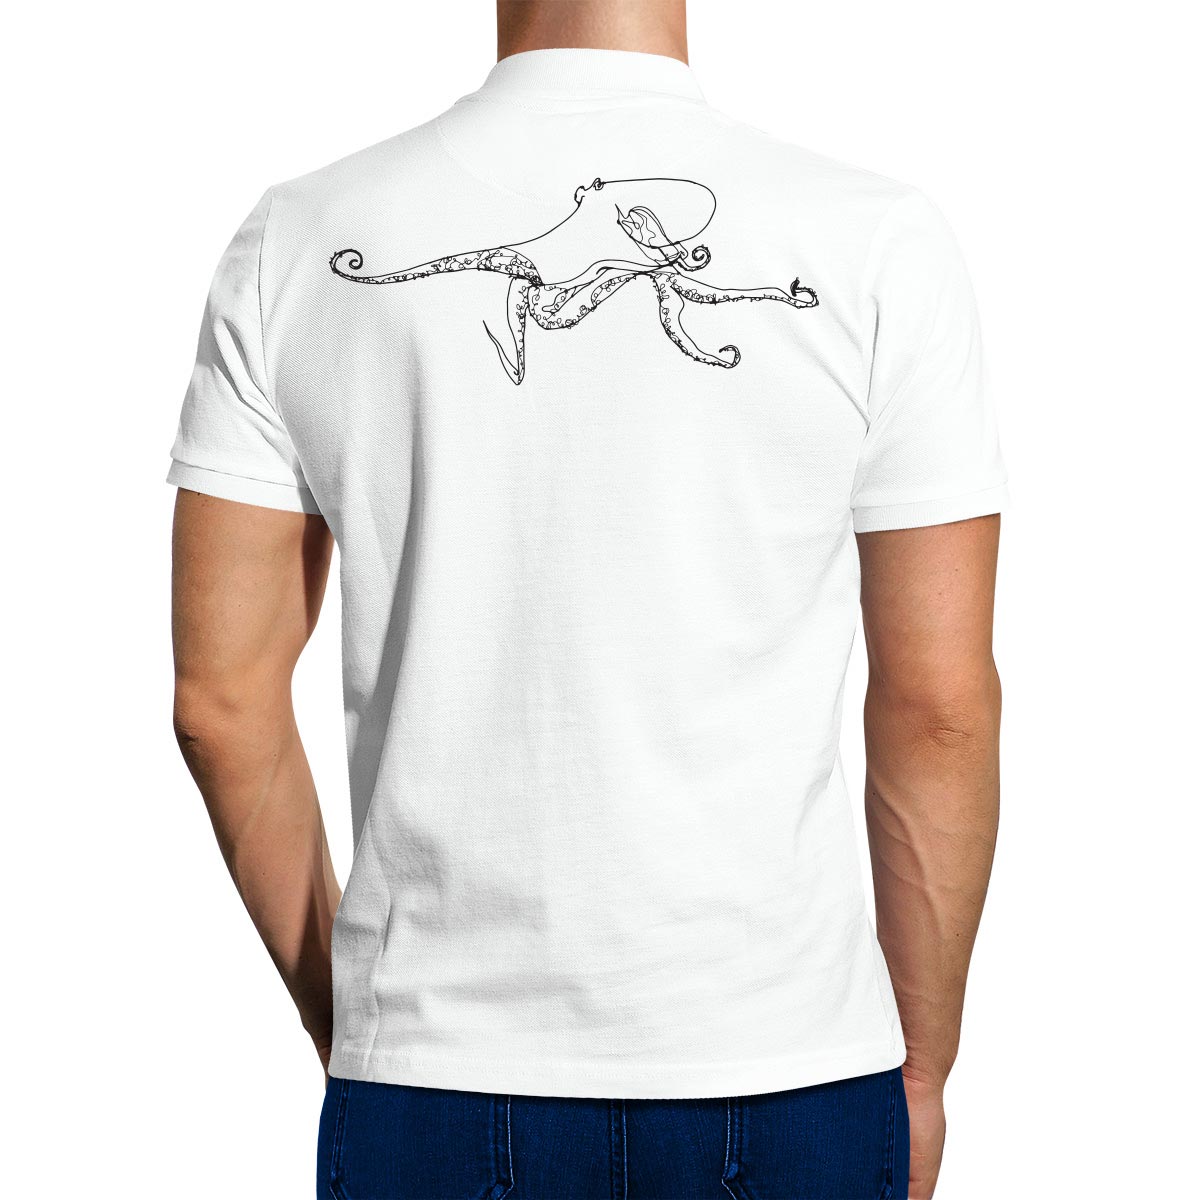 ben-baker-t-shirt-white-back-octopus